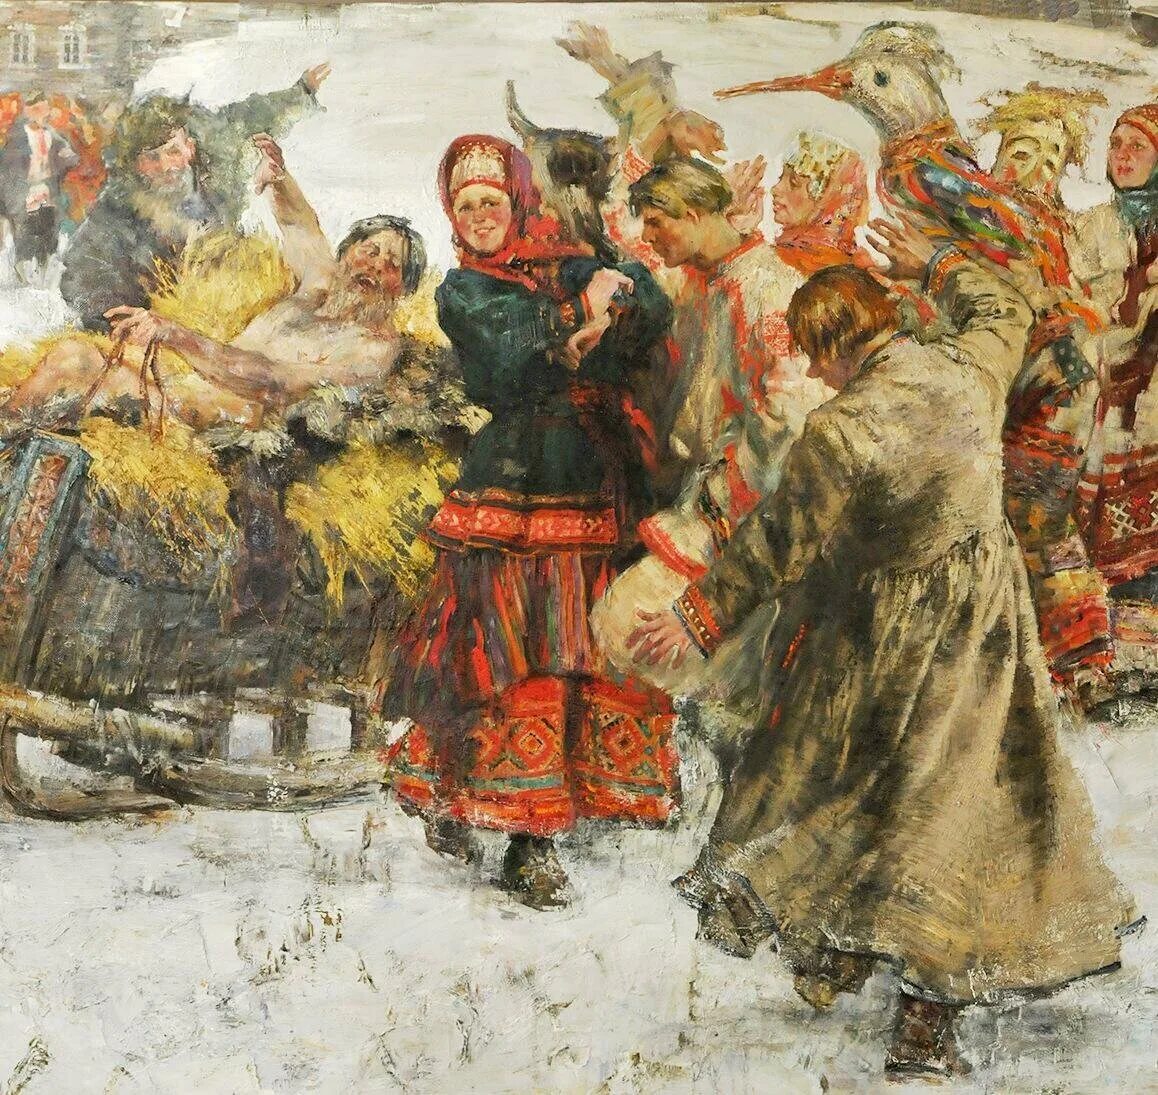 Картина "масленичные гуляния 1881 года " Рябушкина Андрея. Васнецов Масленица. Как называли масленицу в старину